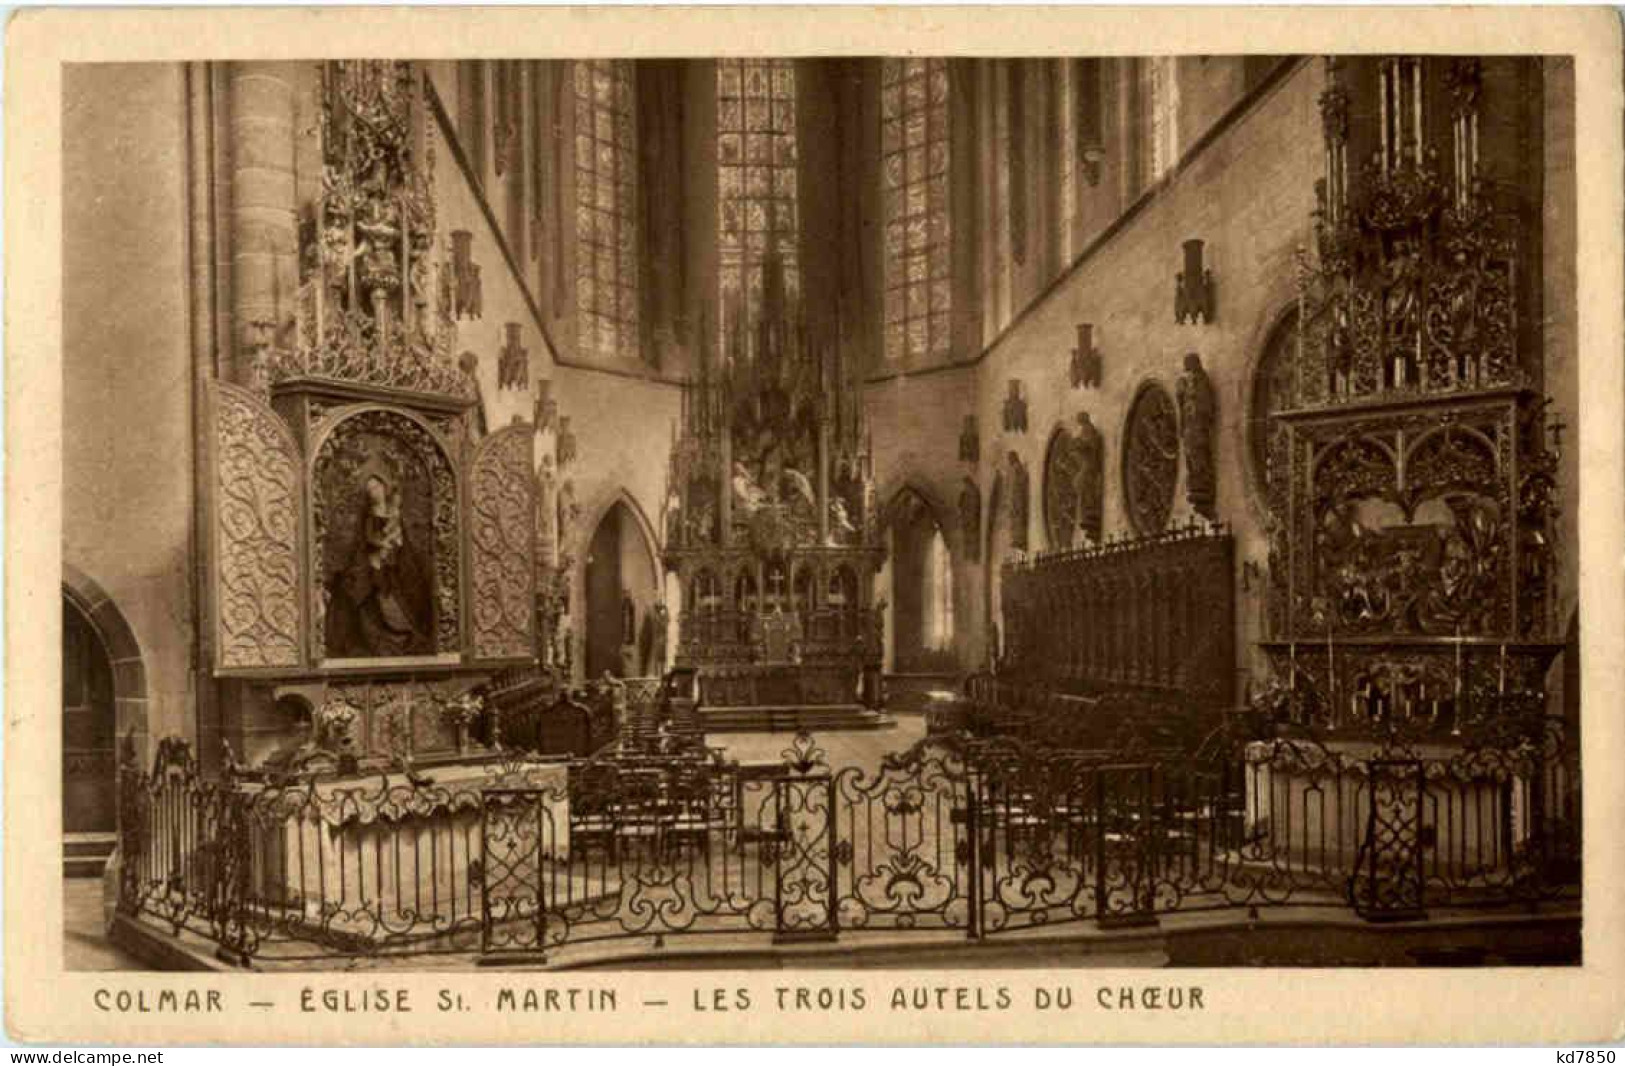 Colmar - Eglise St. Martin - Colmar